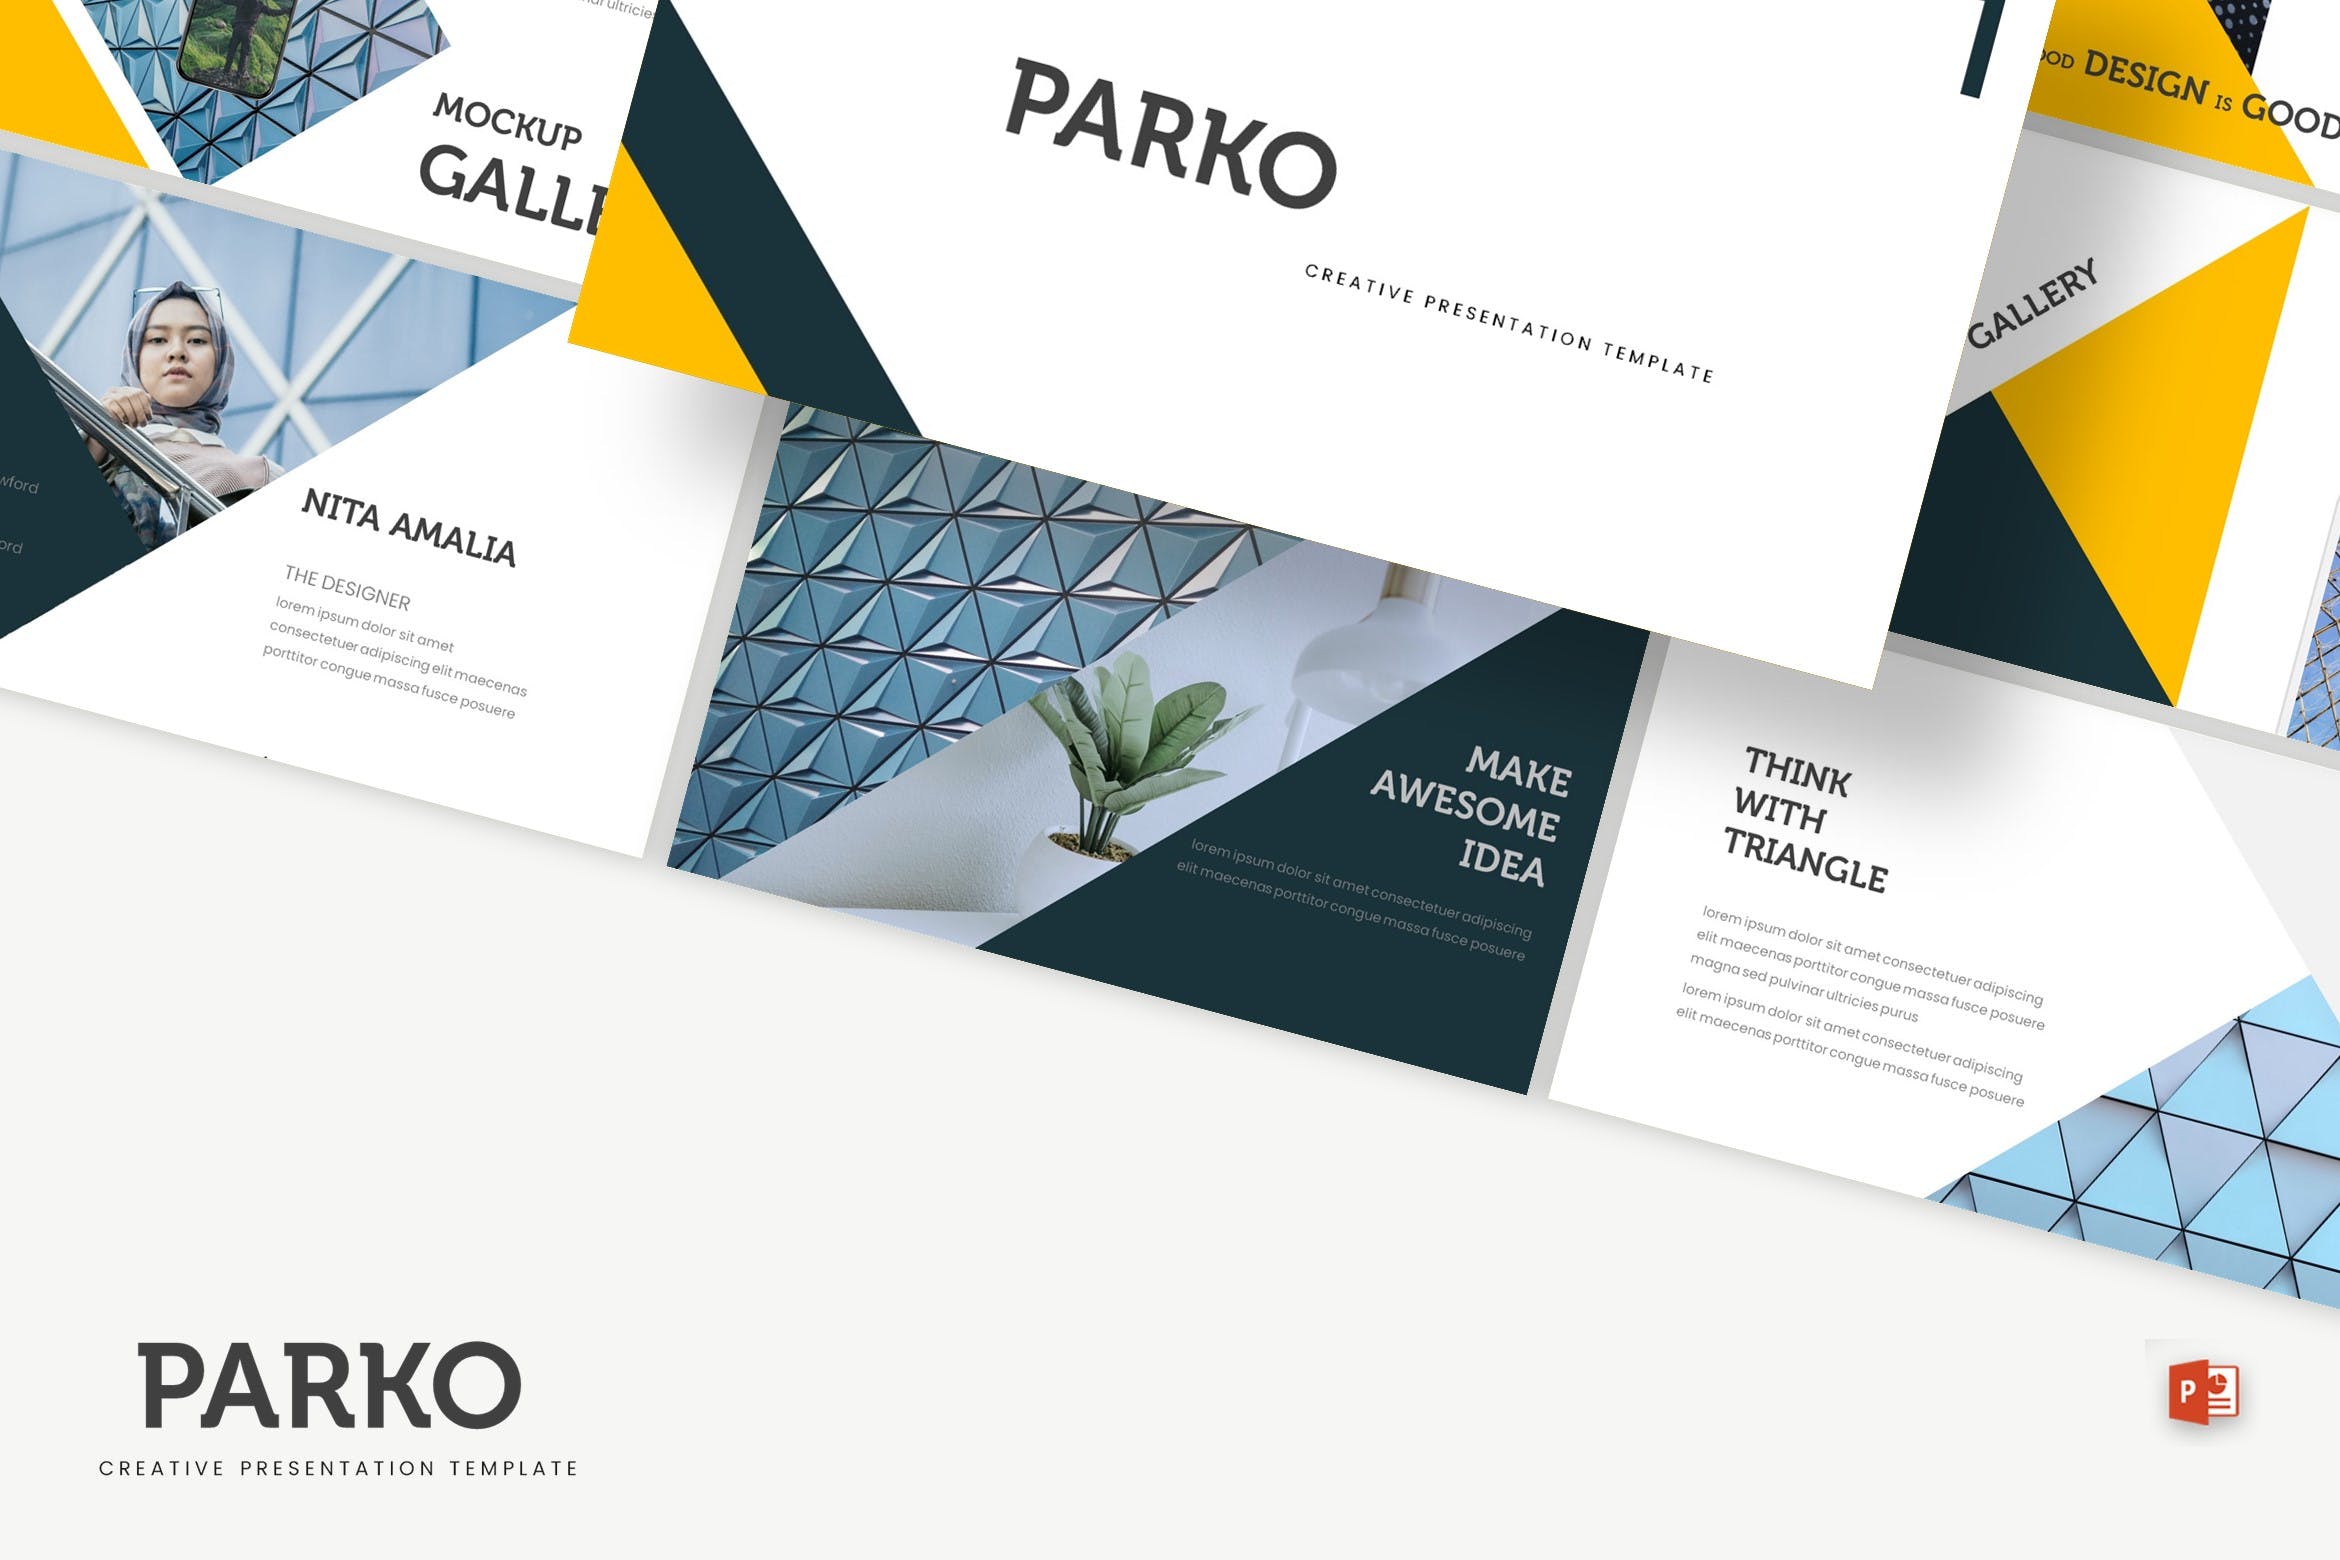 高端建筑设计服务公司16设计素材网精选PPT模板 Parko – Powerpoint Template插图